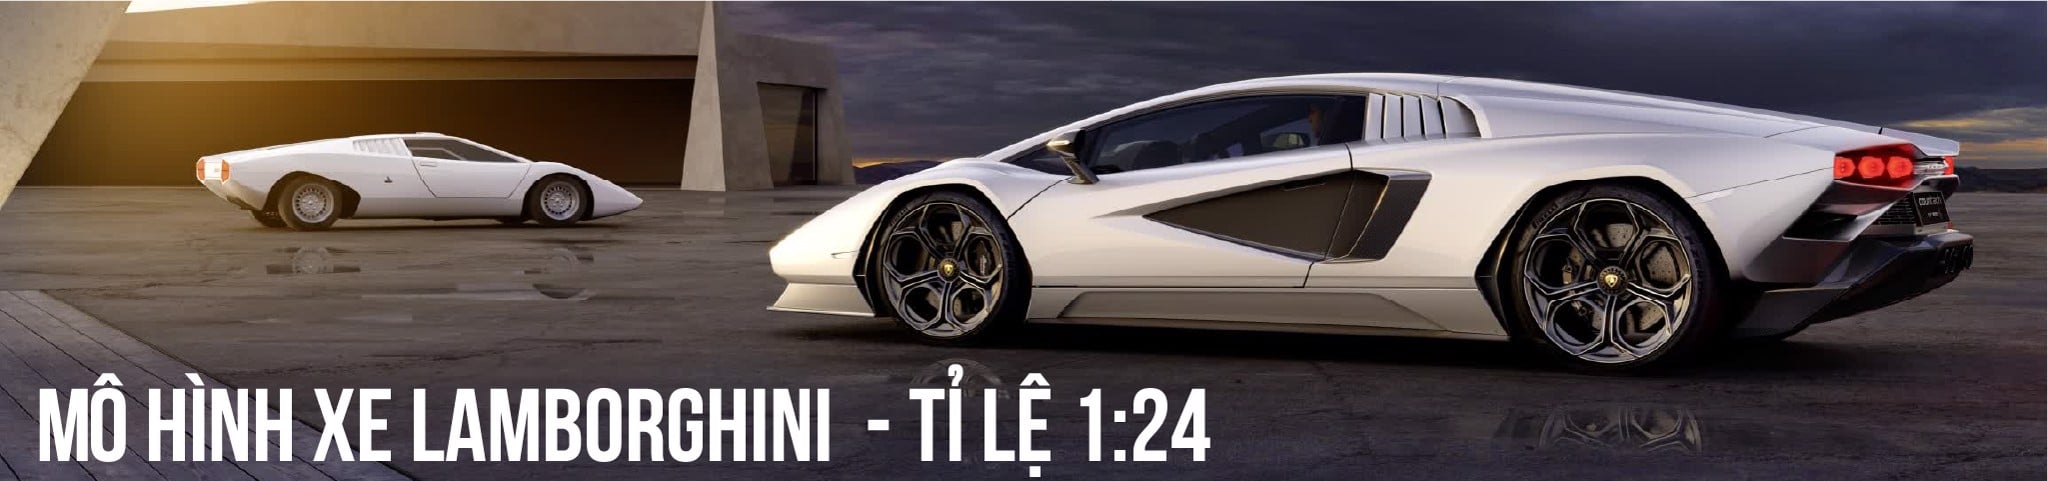 Các mẫu Lamborghini tỉ lệ 1:24